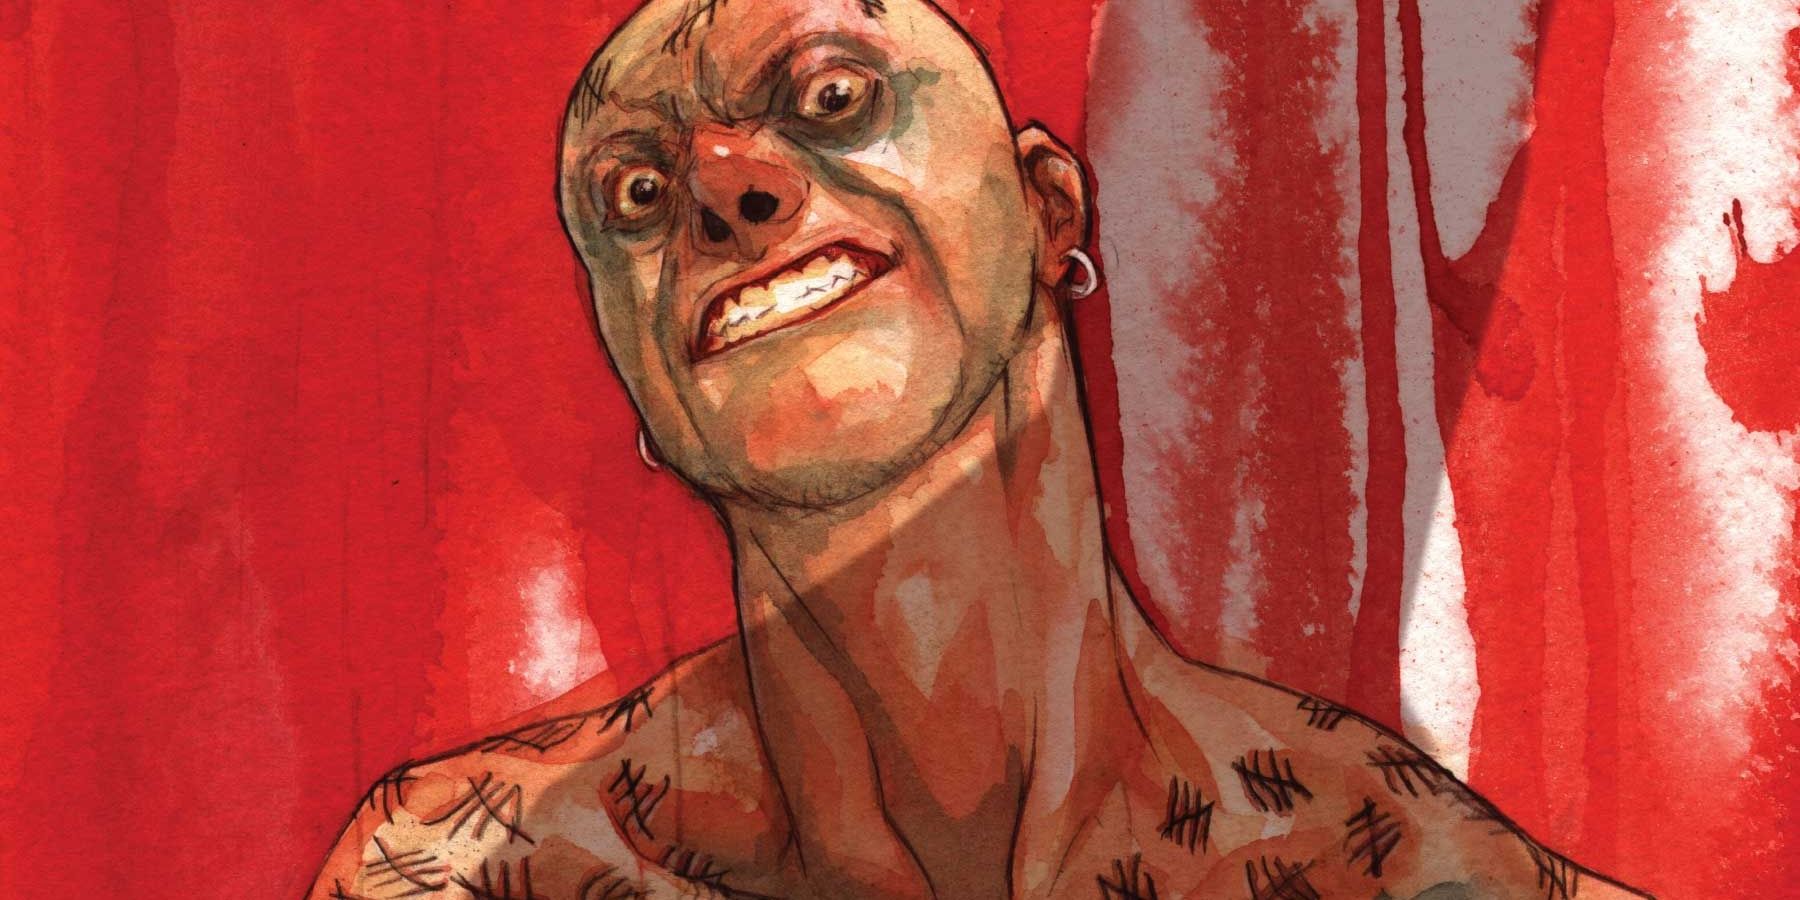 Victor Zsasz fica olhando com sangue na parede na DC Comics